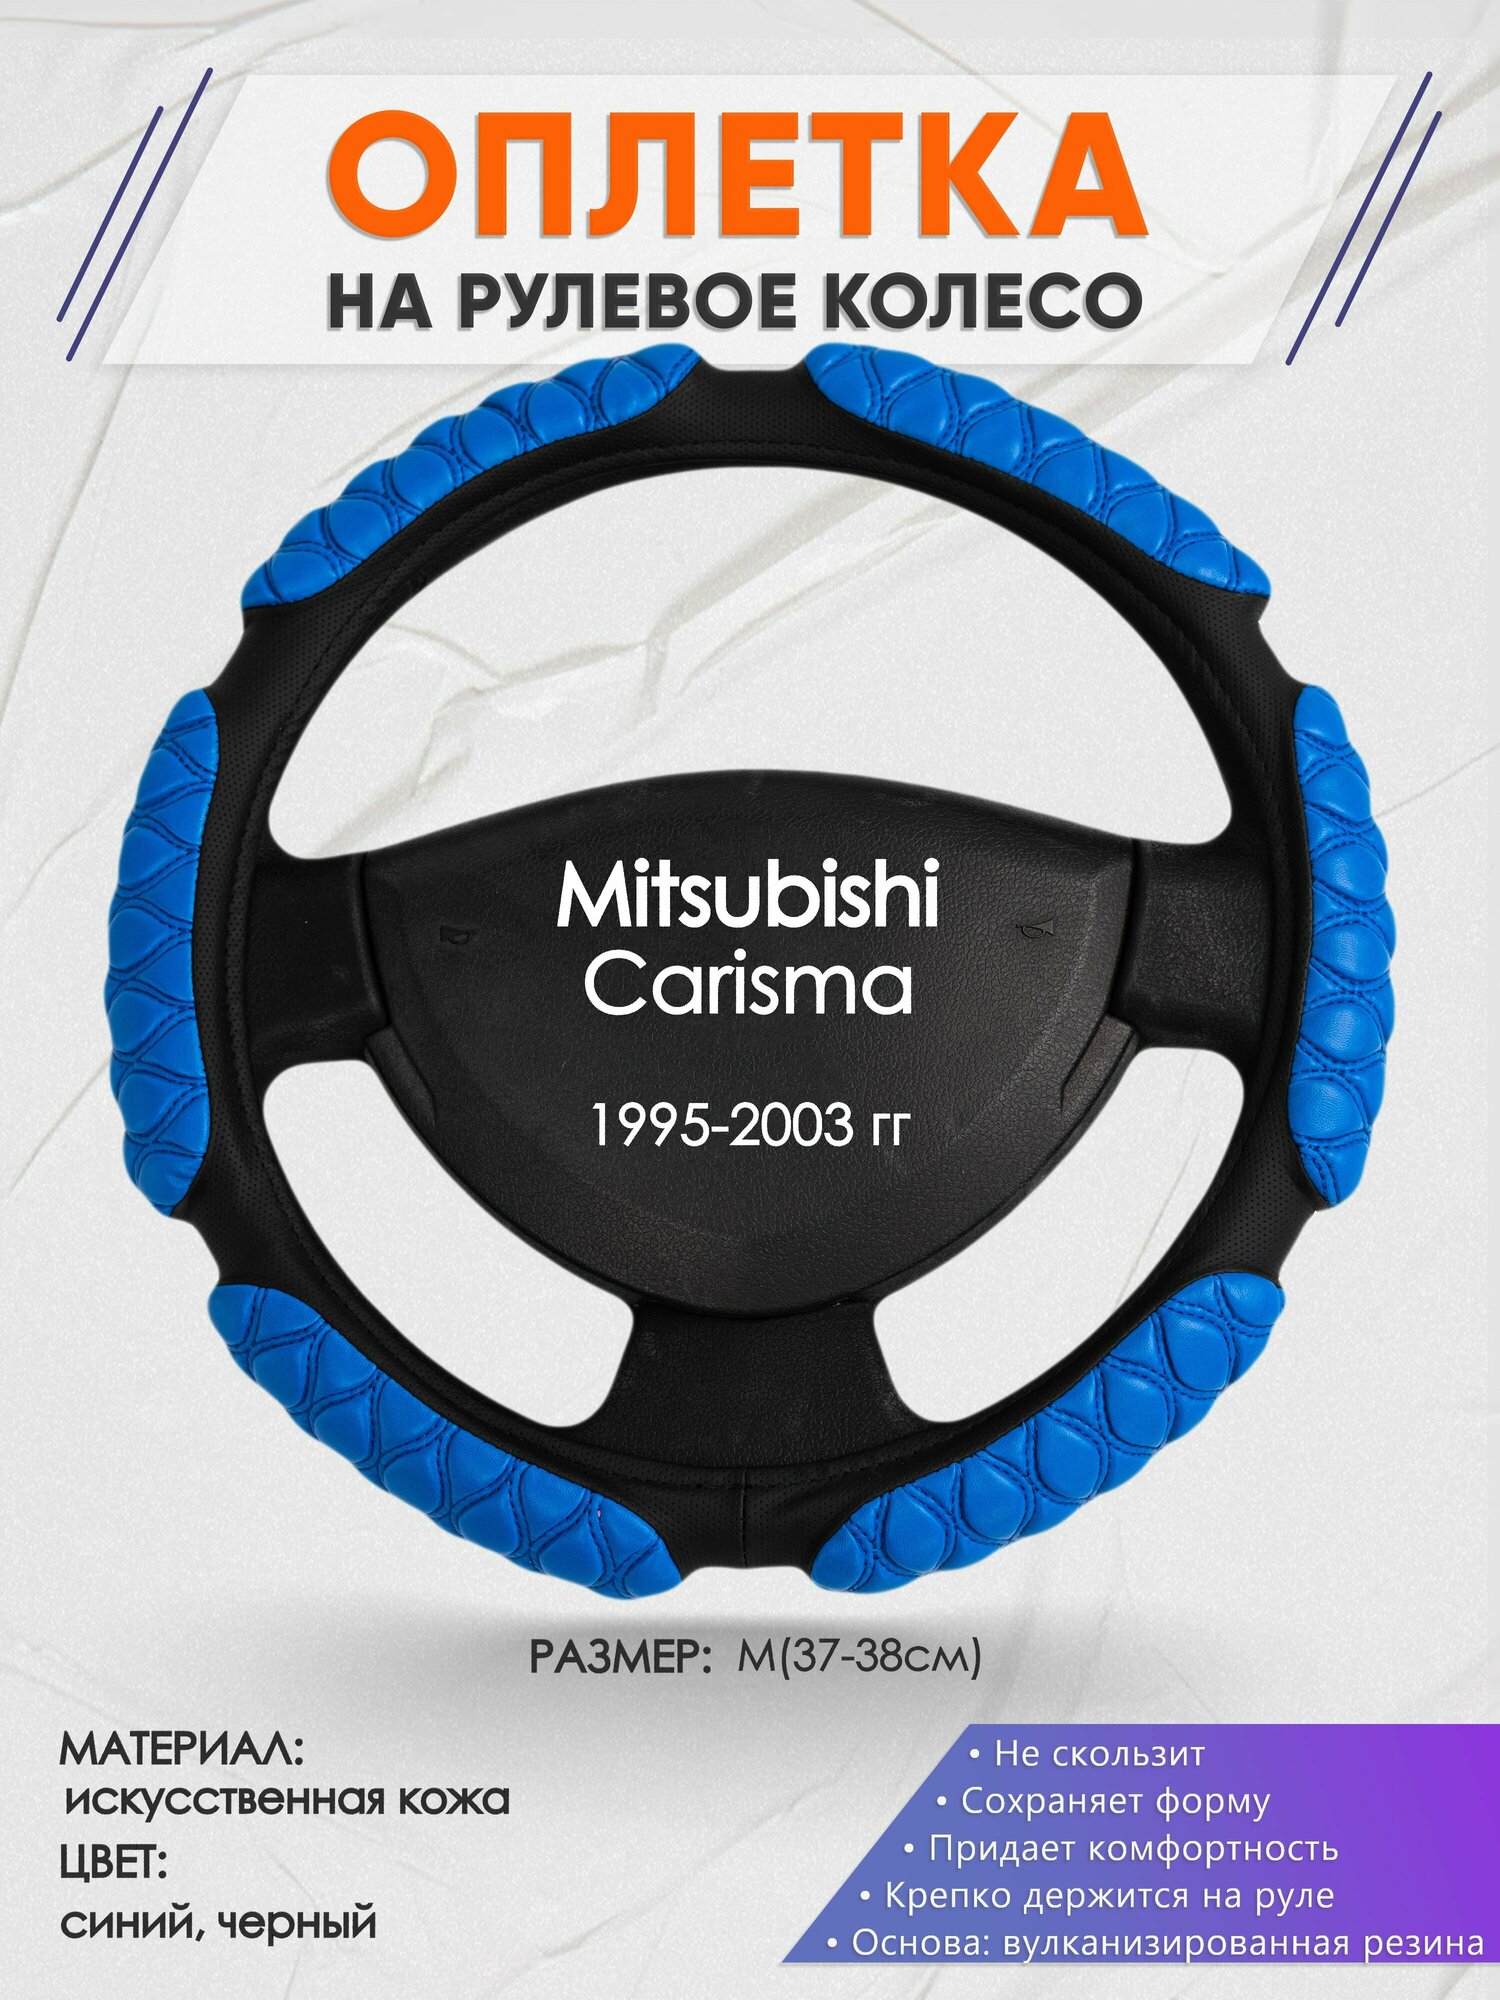 Оплетка на руль для Mitsubishi Carisma (Митсубиси Каризма) 1995-2003, M(37-38см), Искусственная кожа 02